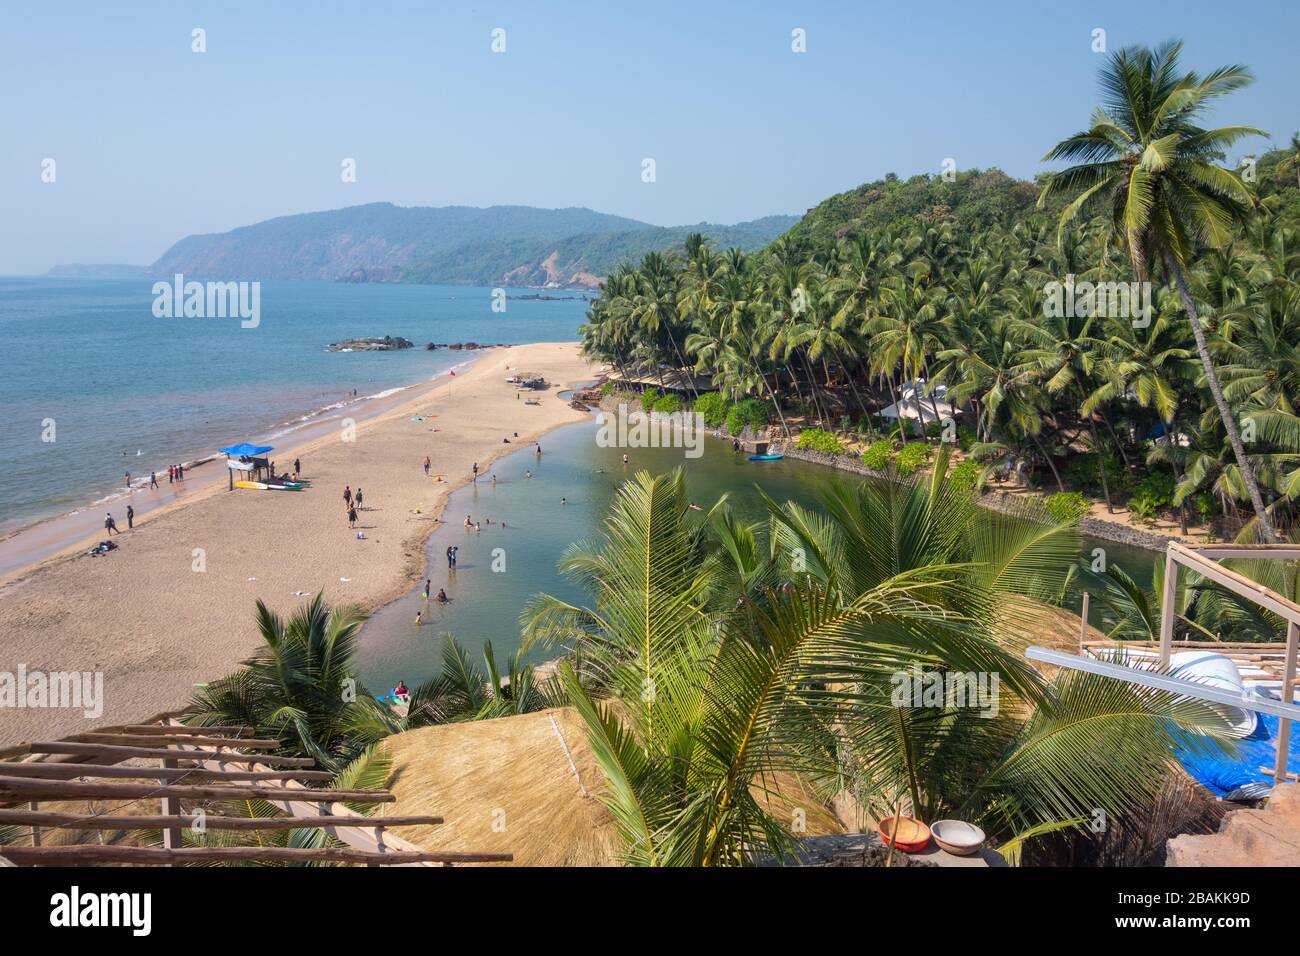 Belle vue sur la plage de Cola et le lagon créé par le flux de la rivière dans la mer d'Arabie séparée par une bande de sable et de palmiers à noix de coco Banque D'Images